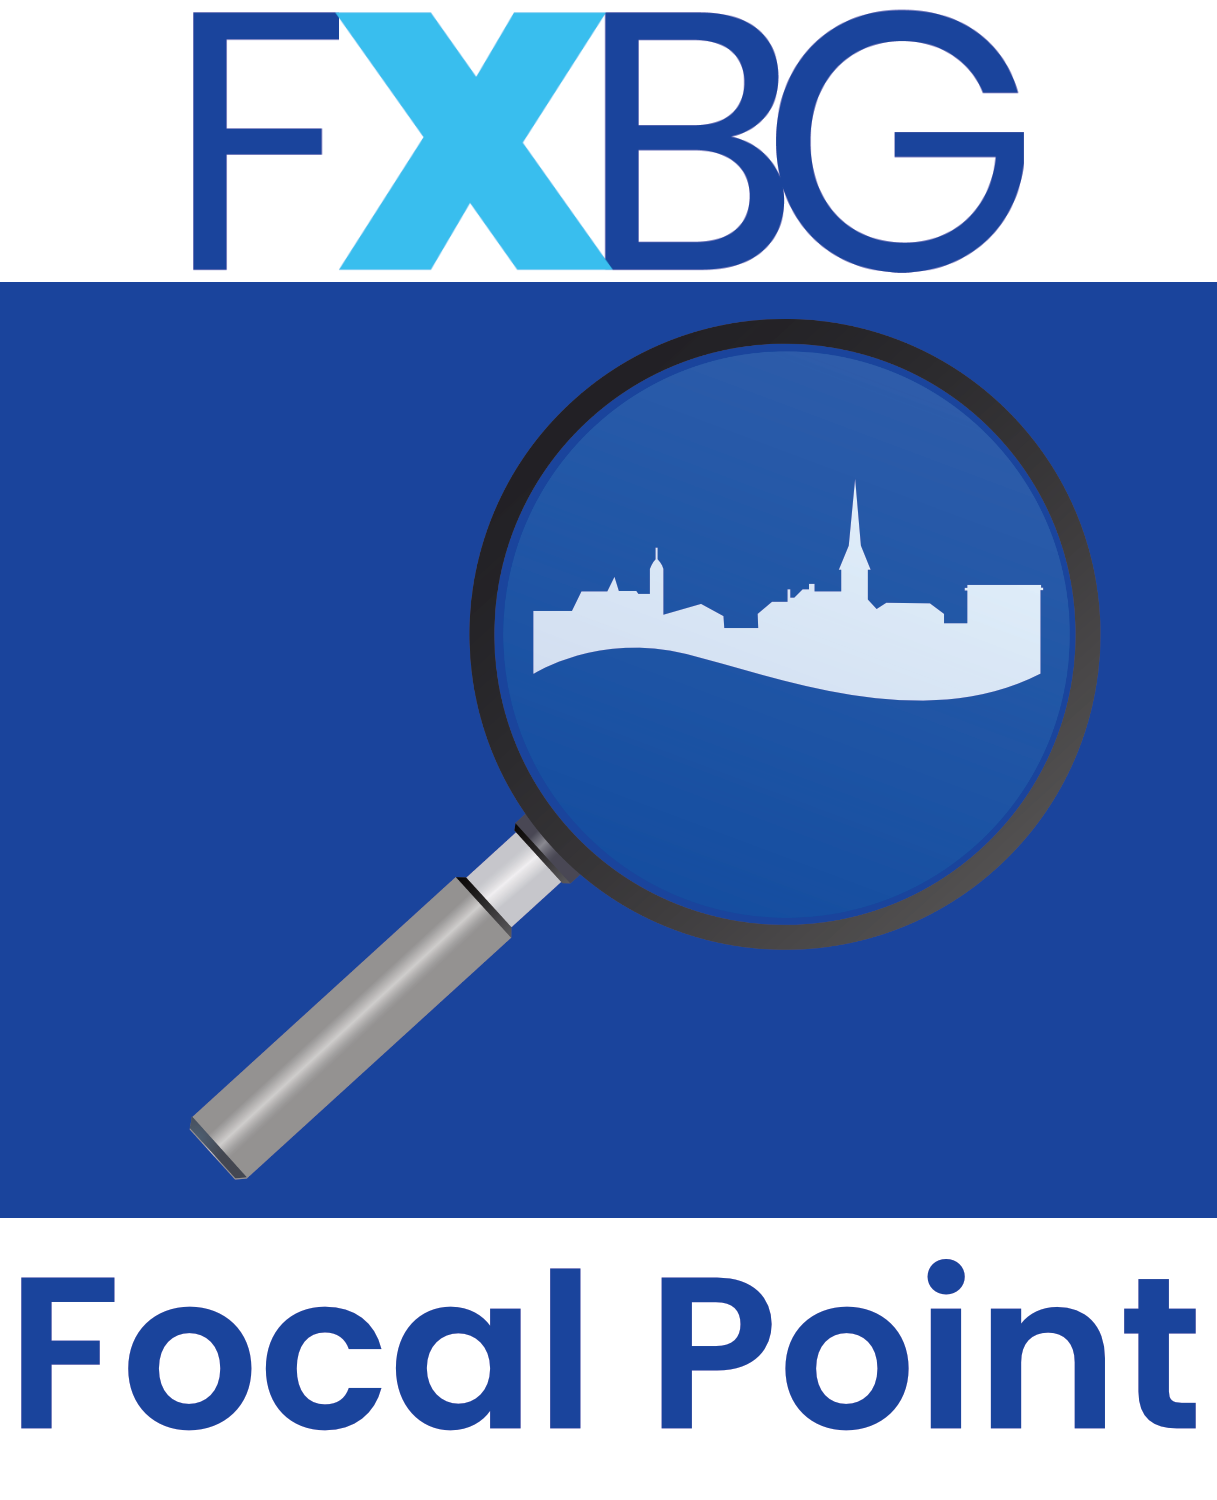 FXBG Focal Point, February 2021